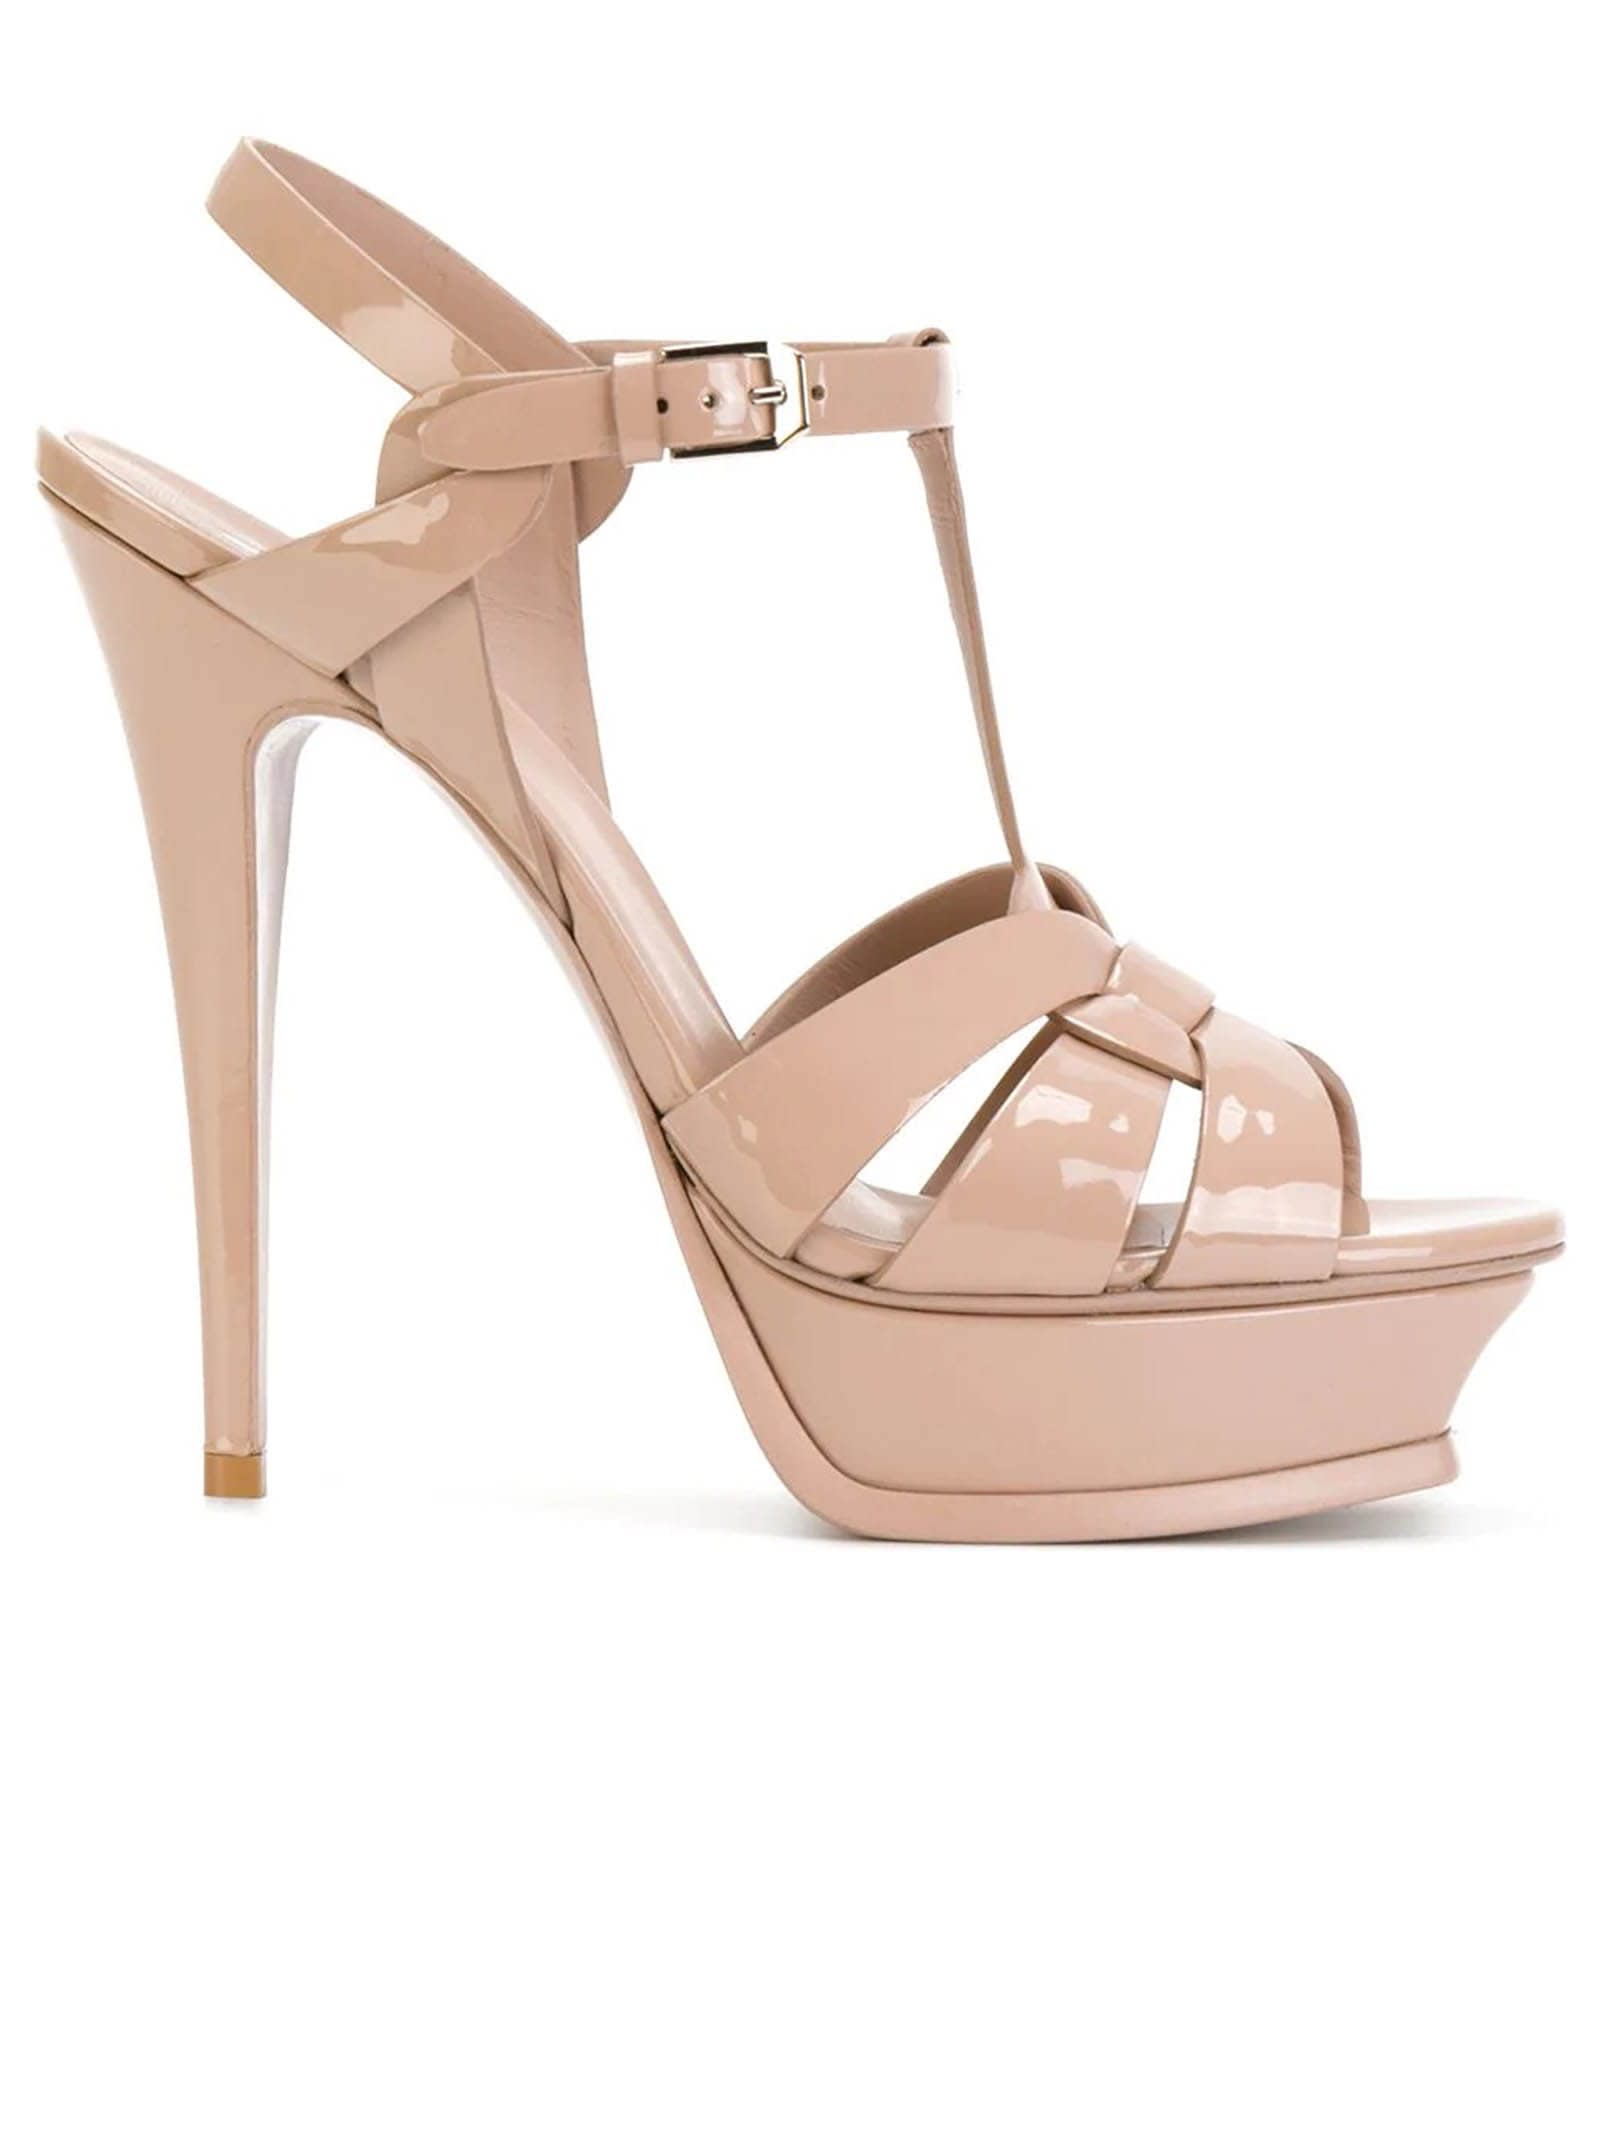 Buy Saint Laurent Nude Patent Tribute Sandals online, shop Saint Laurent shoes with free shipping